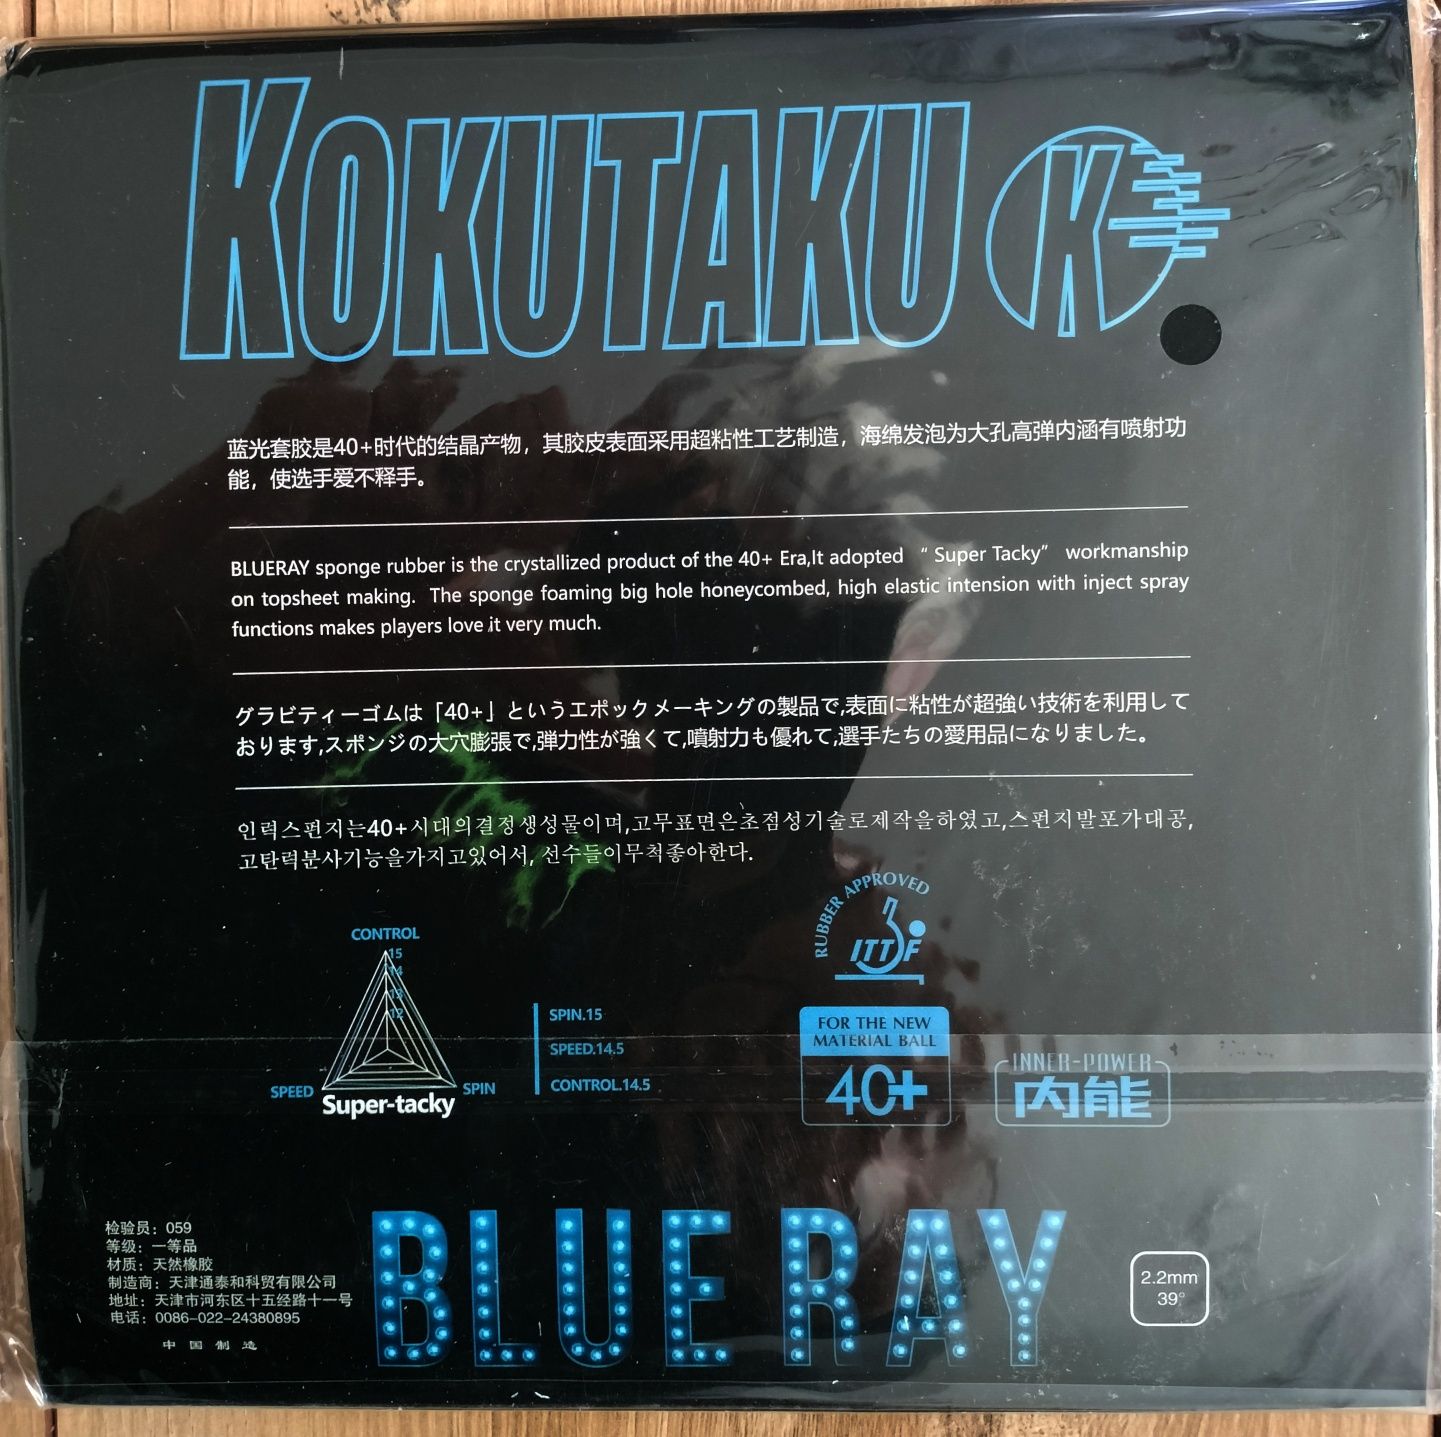 Okładzina Kokutaku Blueray 2,2mm  tenis stołowy